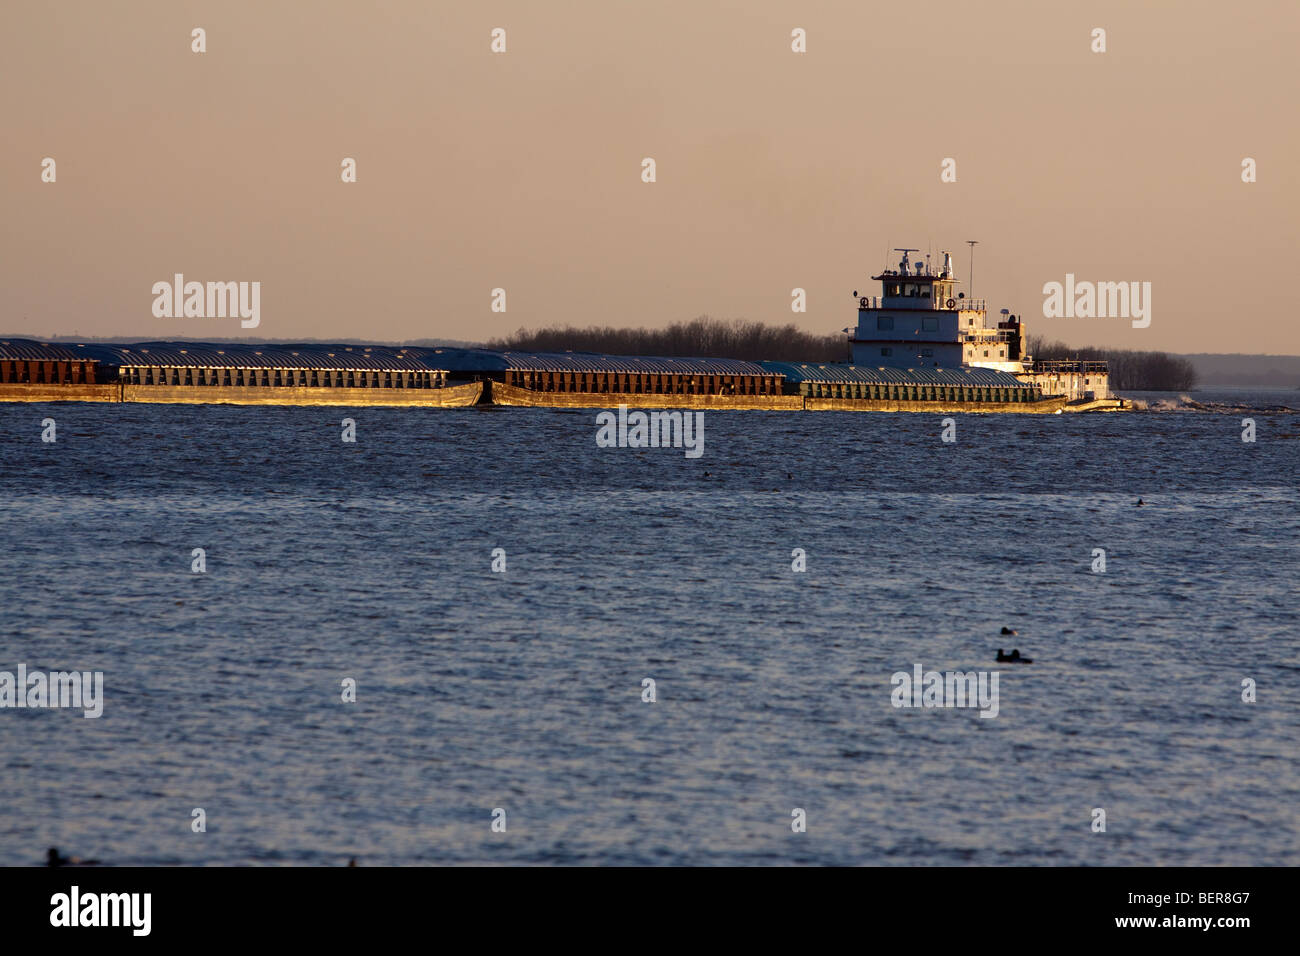 Spingendo un paio di chiatte a nord lungo il fiume Mississippi, un rimorchiatore di grandi dimensioni (traino) motori in barca lungo le rive di Ft. Madison, IA. Foto Stock